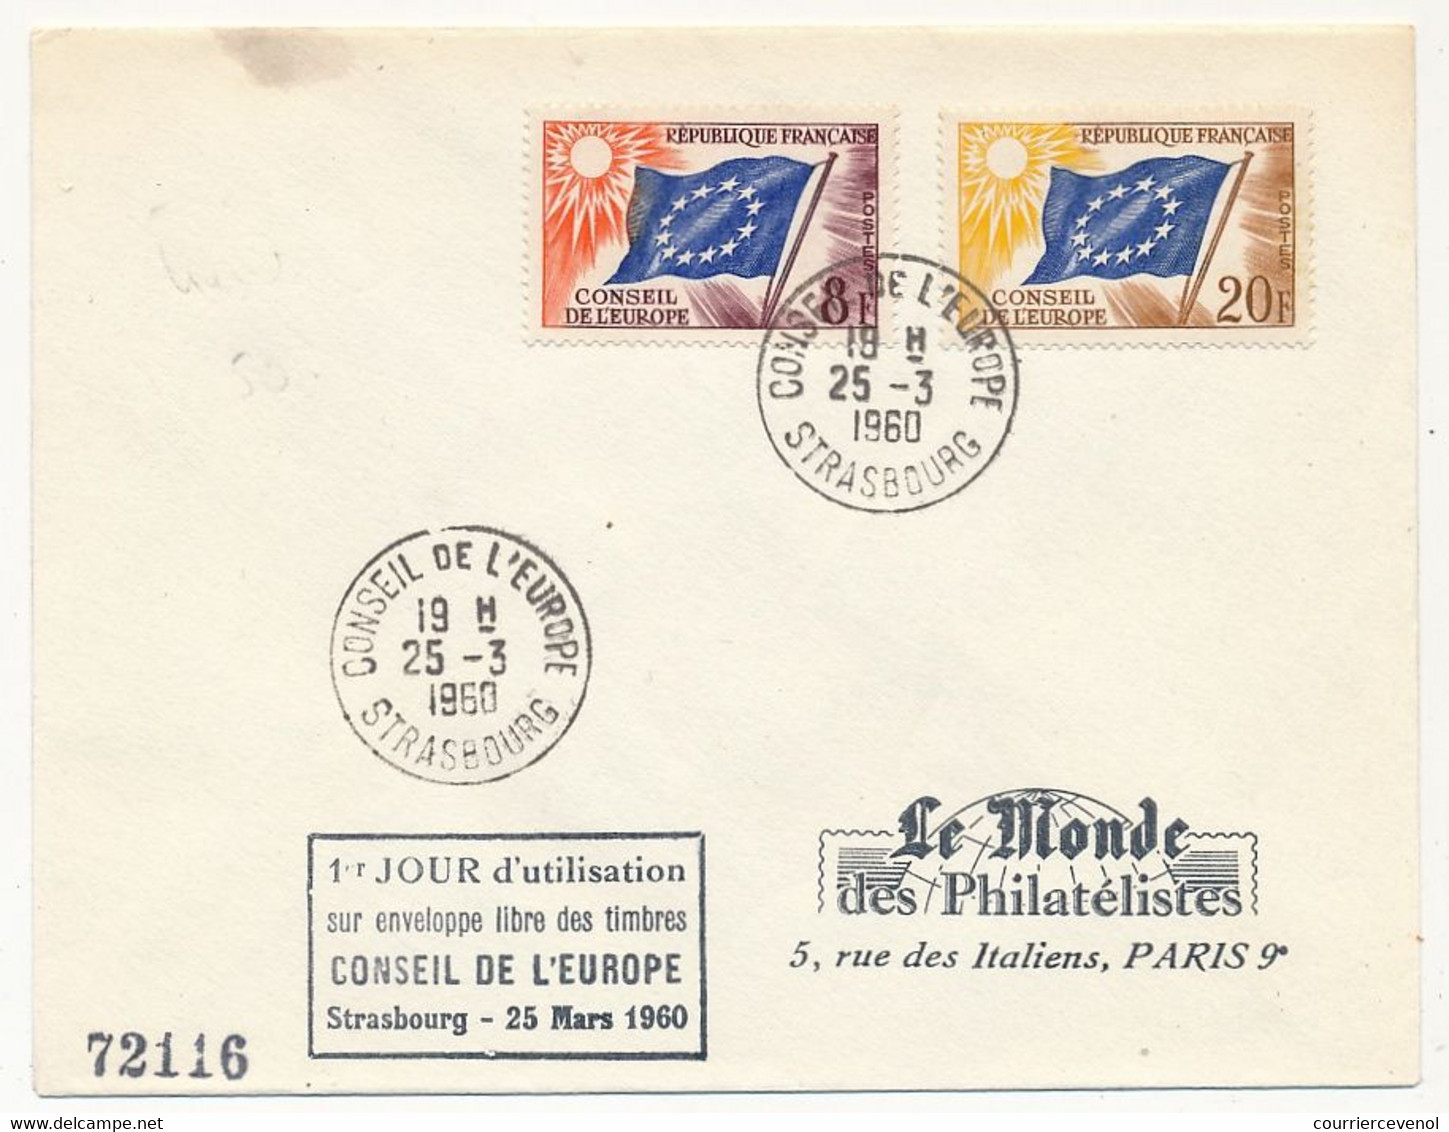 FRANCE => 4 Enveloppes 1e Jour D'utilisation Sur Enveloppe Libre Des Timbres Conseil De L'Europe - Strasbourg -25/3/1960 - Covers & Documents